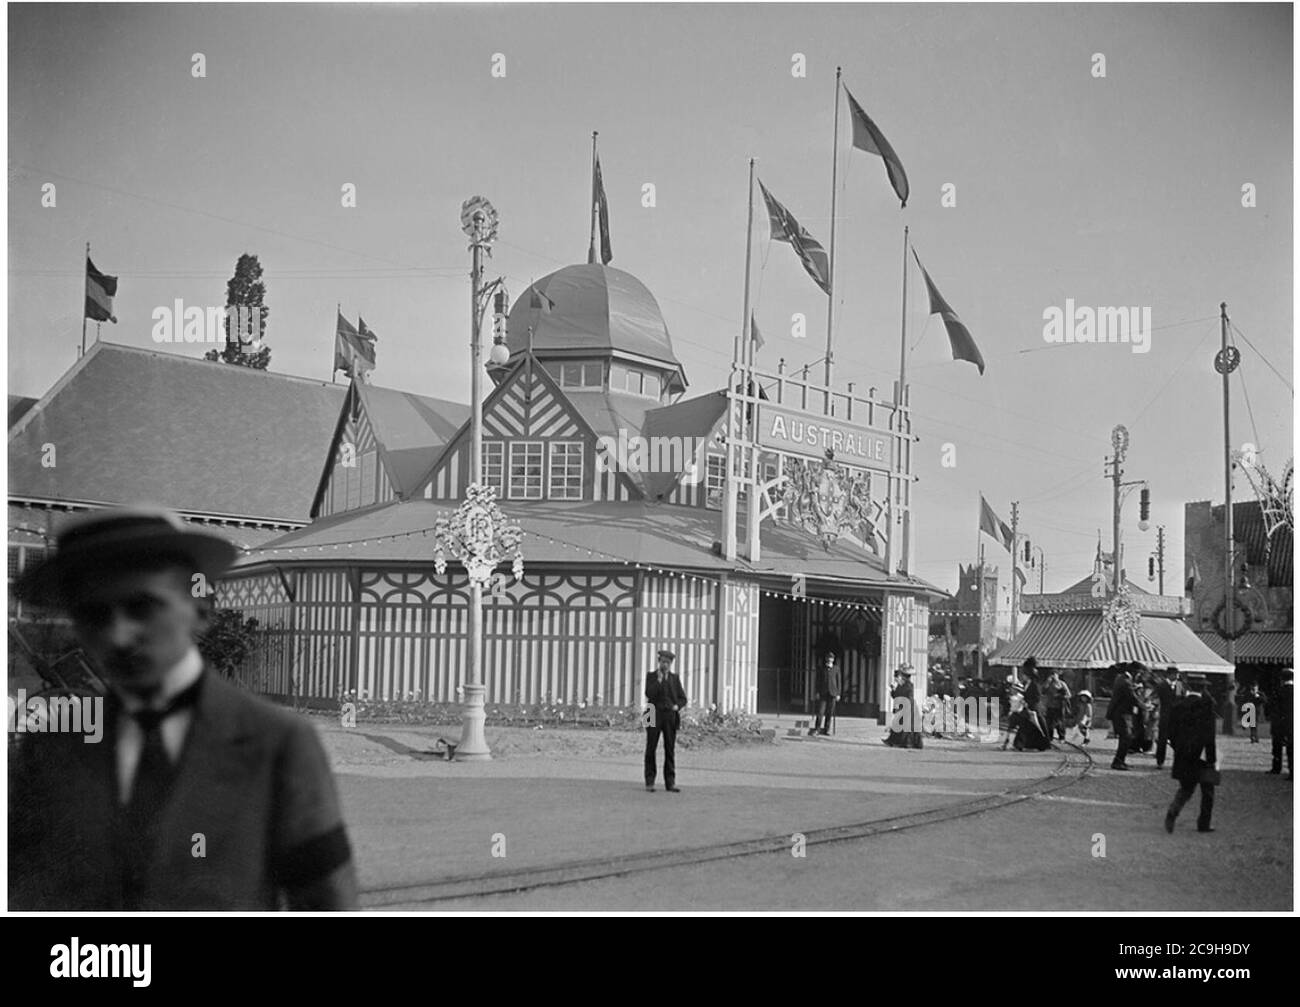 J. Bauchart. Pavillon de l'Australie. Exposition internationale du Nord de la France, Roubaix, 1911. Stock Photo